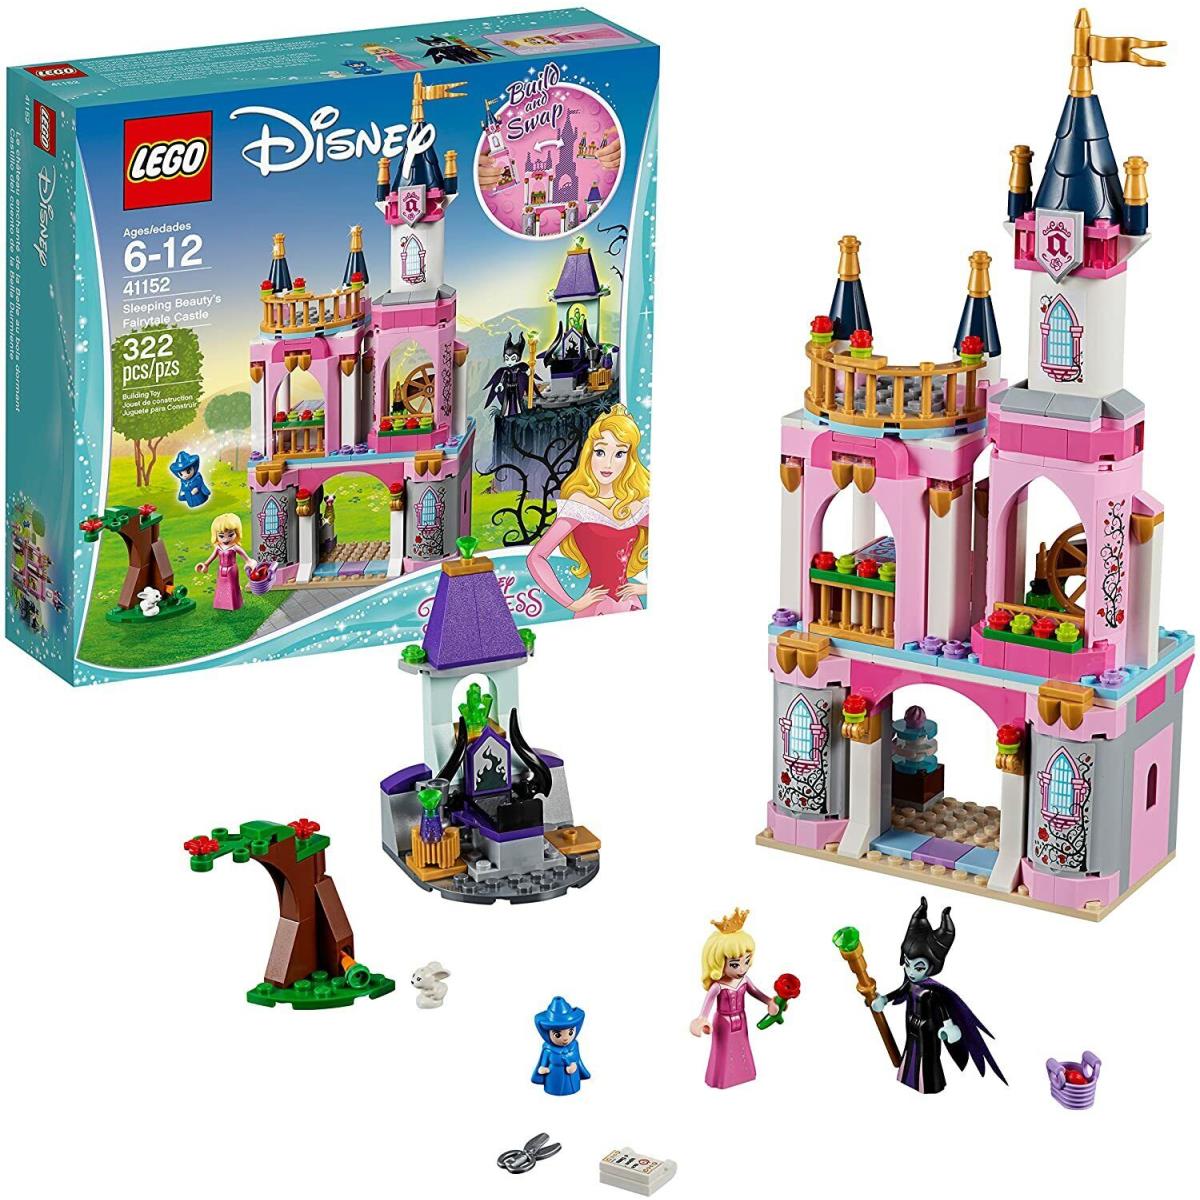 Lego - Disney Princess Sleeping Beauty`s Fairytale Castle 41152 Building